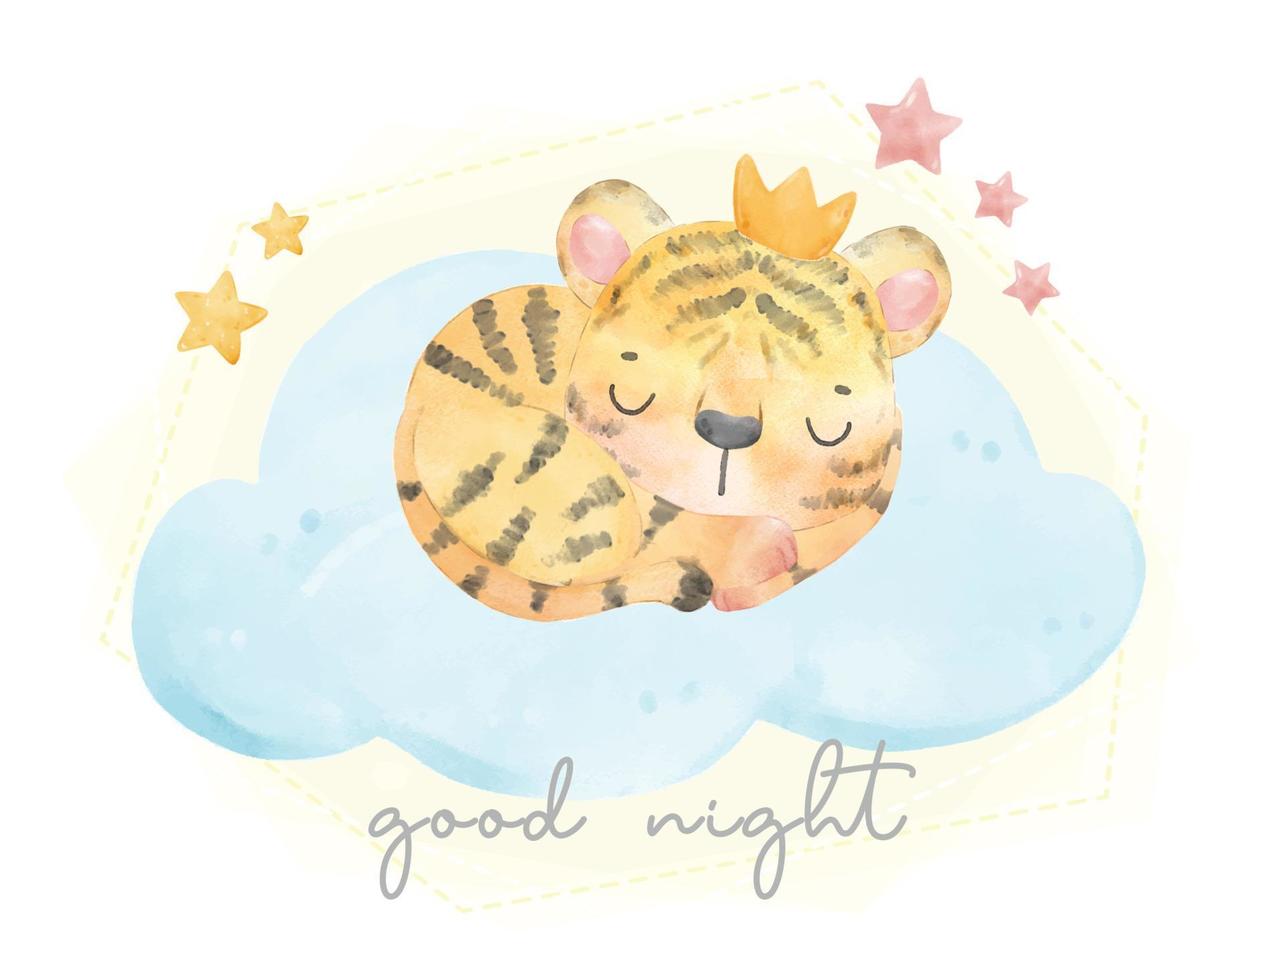 carino adorabile tigre con nuvola che dorme sulla nuvola, buona notte, illustrazione dell'acquerello della fauna selvatica disegnata a mano, vettore del fumetto di doodle della scuola materna